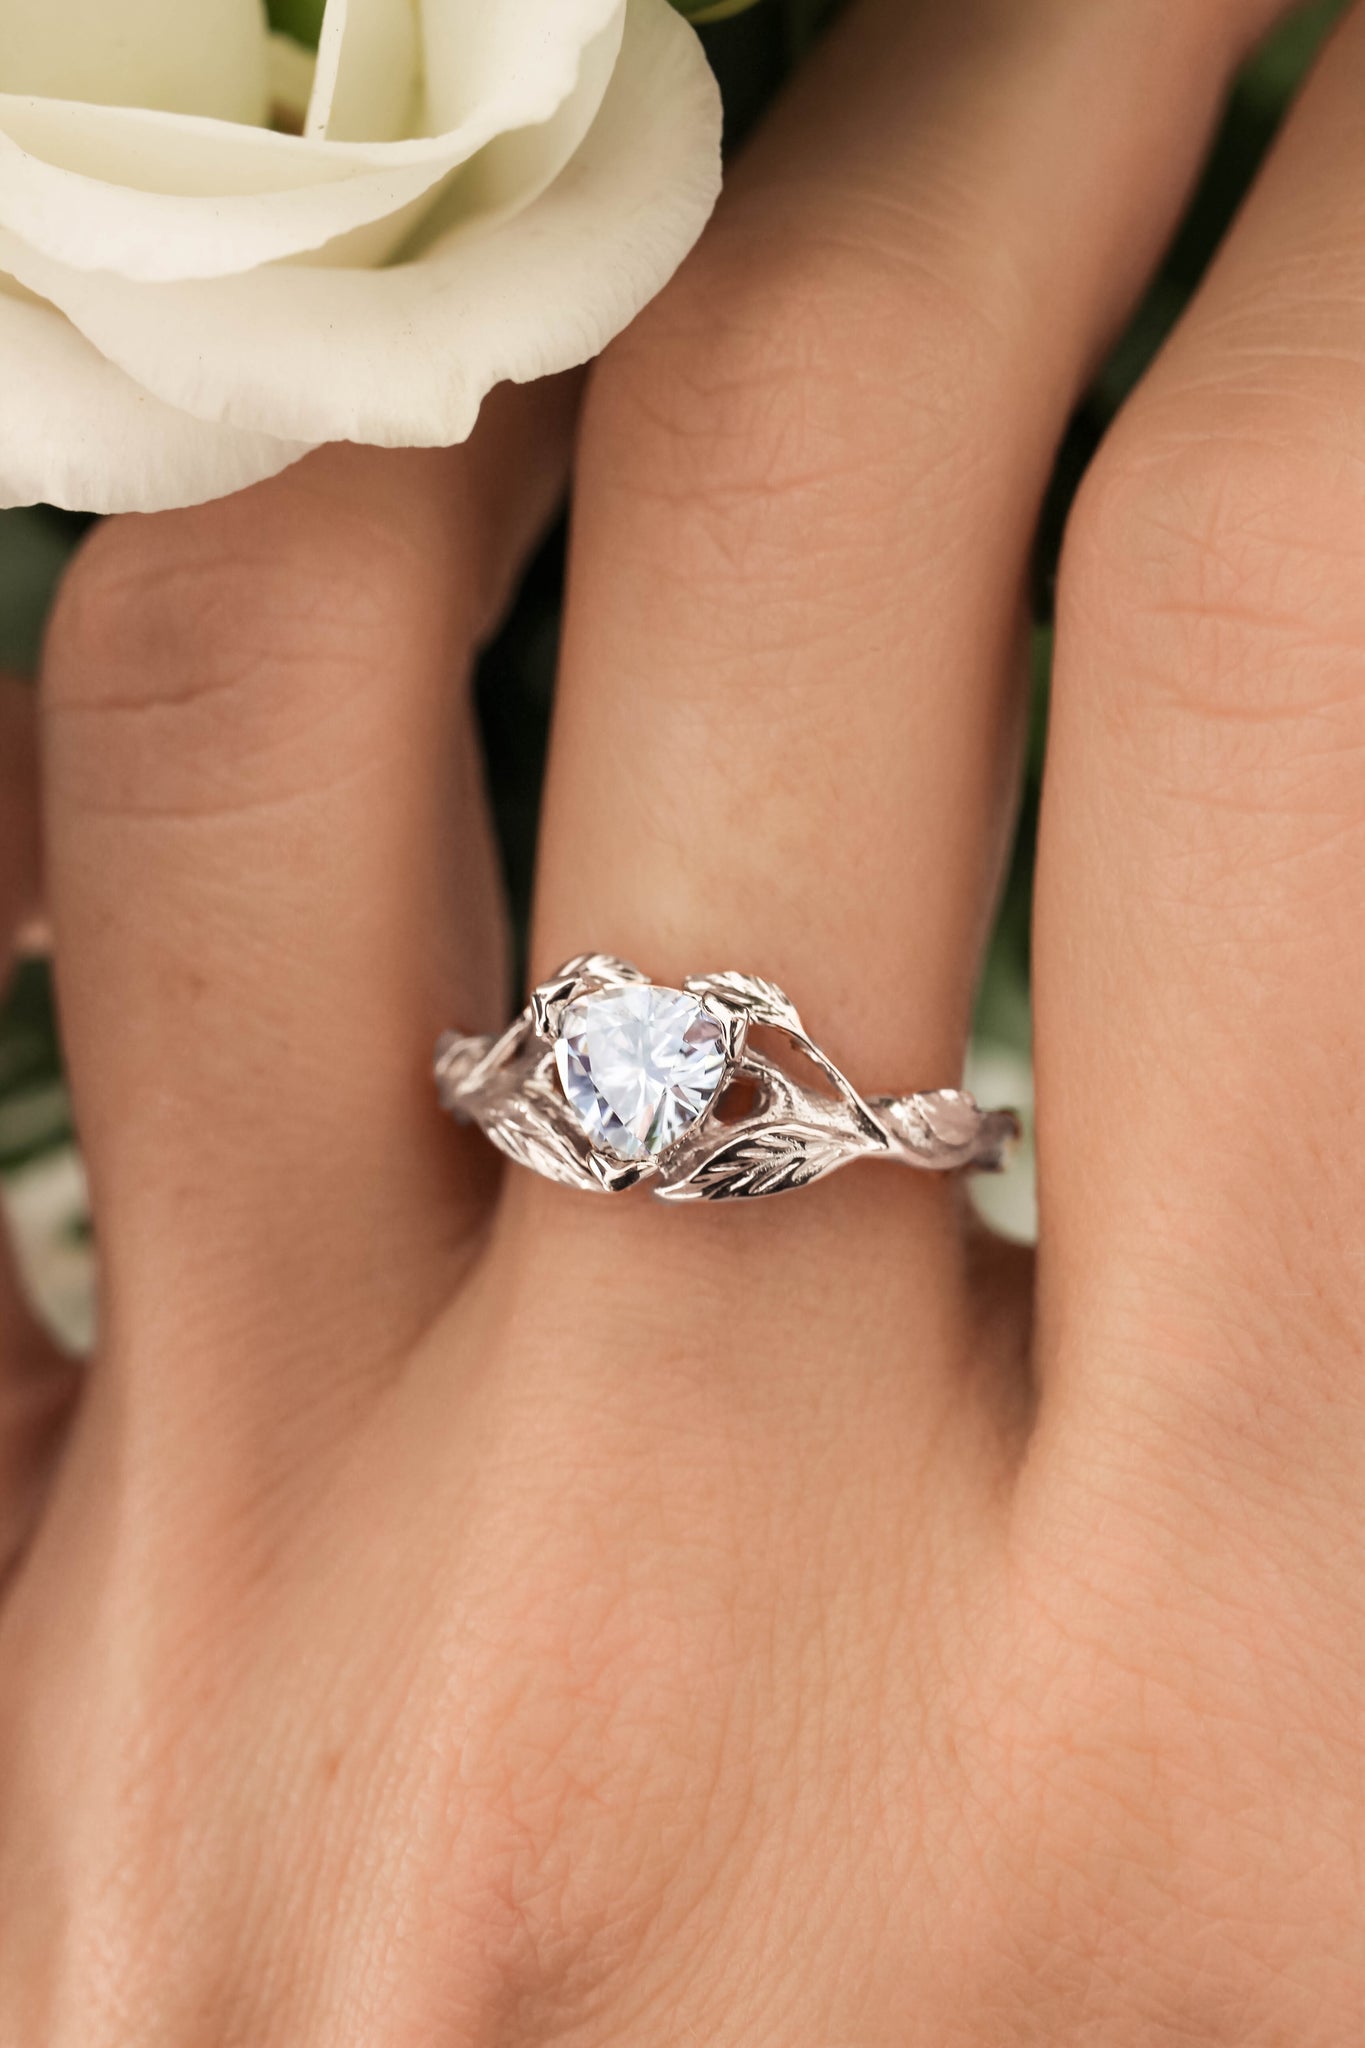 Clematis | branch engagement ring setting, trillion gemstone - Eden Garden Jewelry™